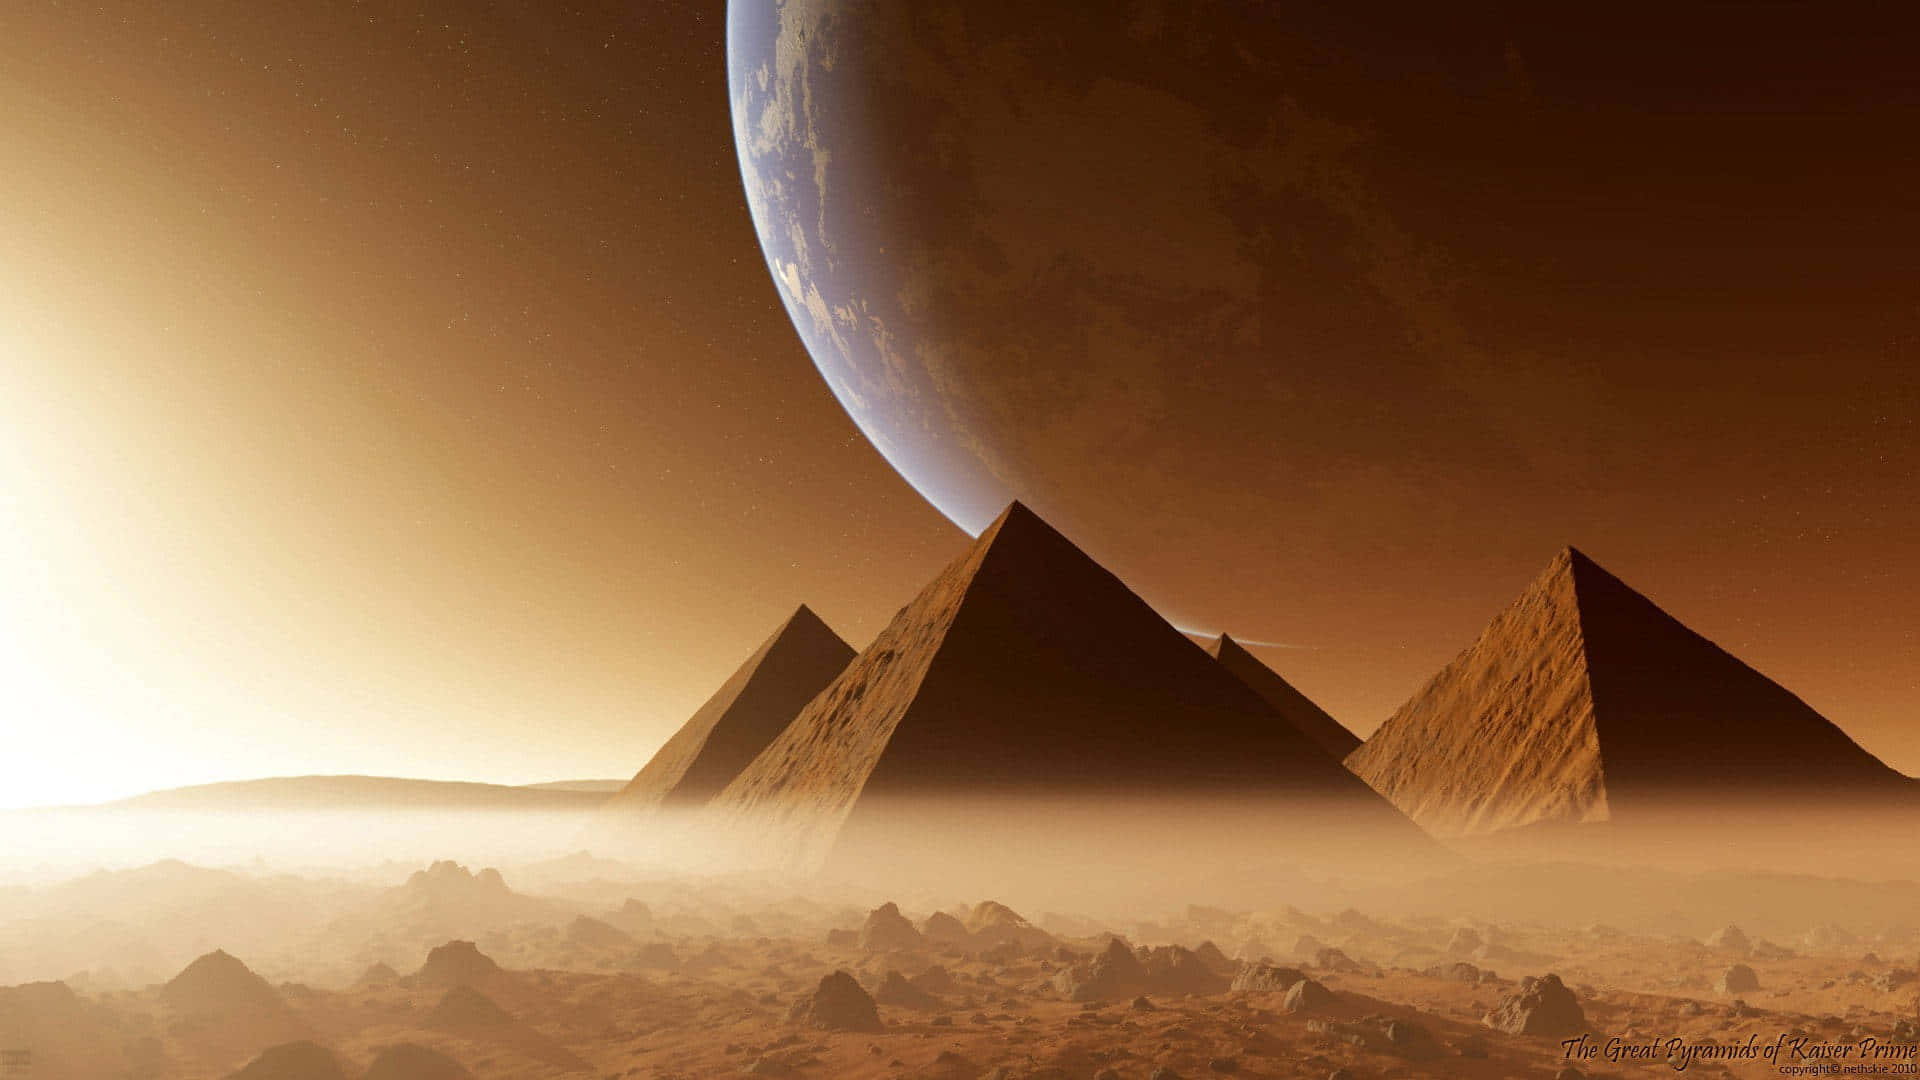 setting in the distance - Et ørkenlandskab med pyramider og en sol der går ned i det fjerne Wallpaper